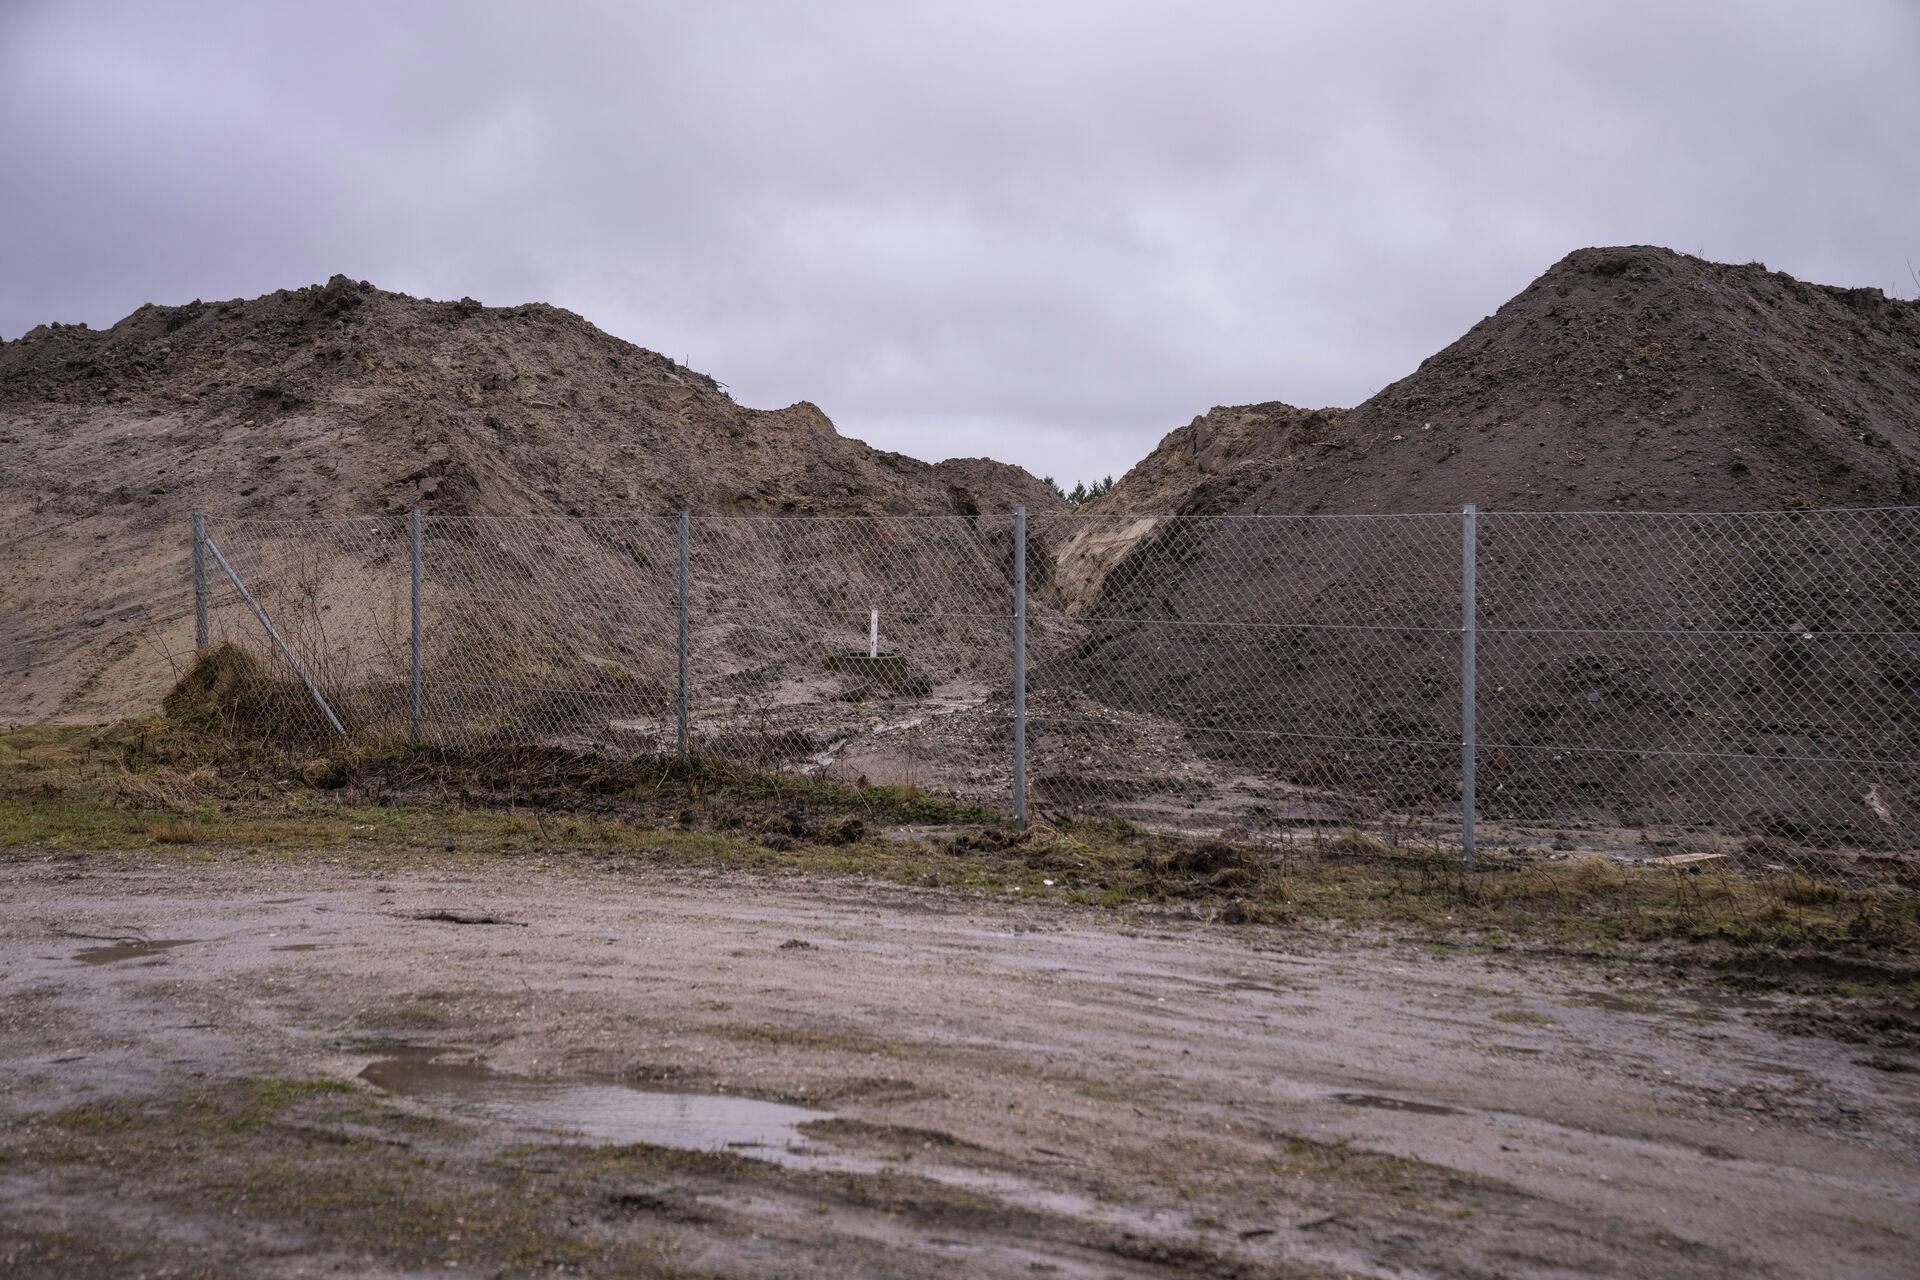 Analyser af jordprøver fra Nordic Waste i Ølst viser forurening, men der er ikke tale om en miljøkatastrofe.